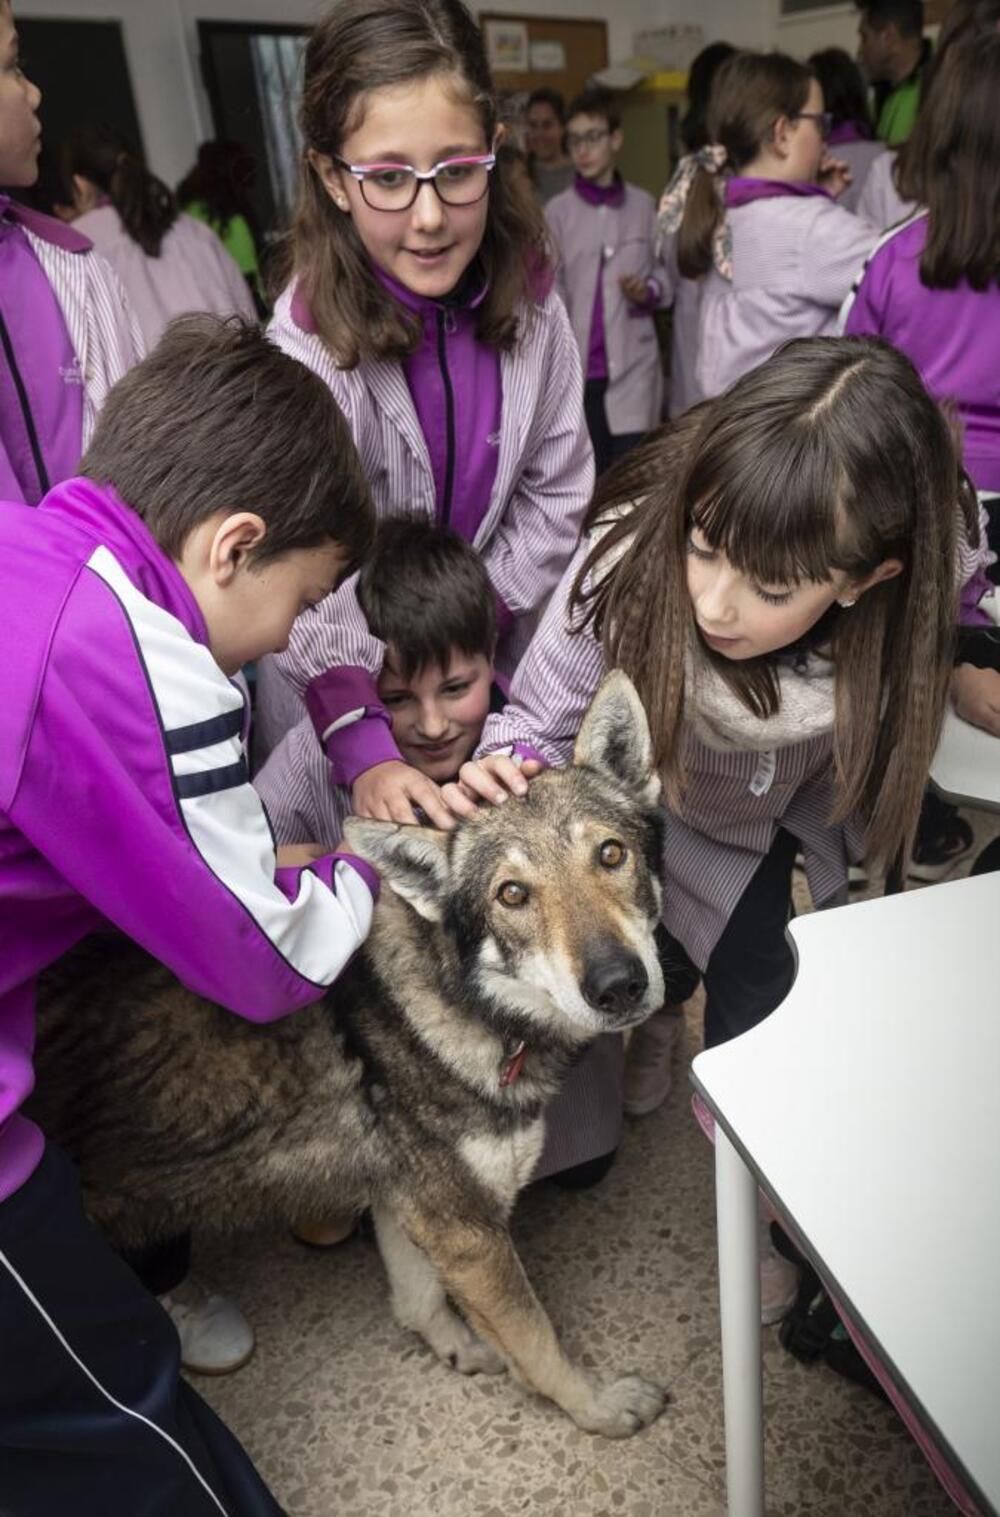 En esta imagen parece ser el lobo quien pide ayuda con la mirada, asustado ante tanto cariño humano.